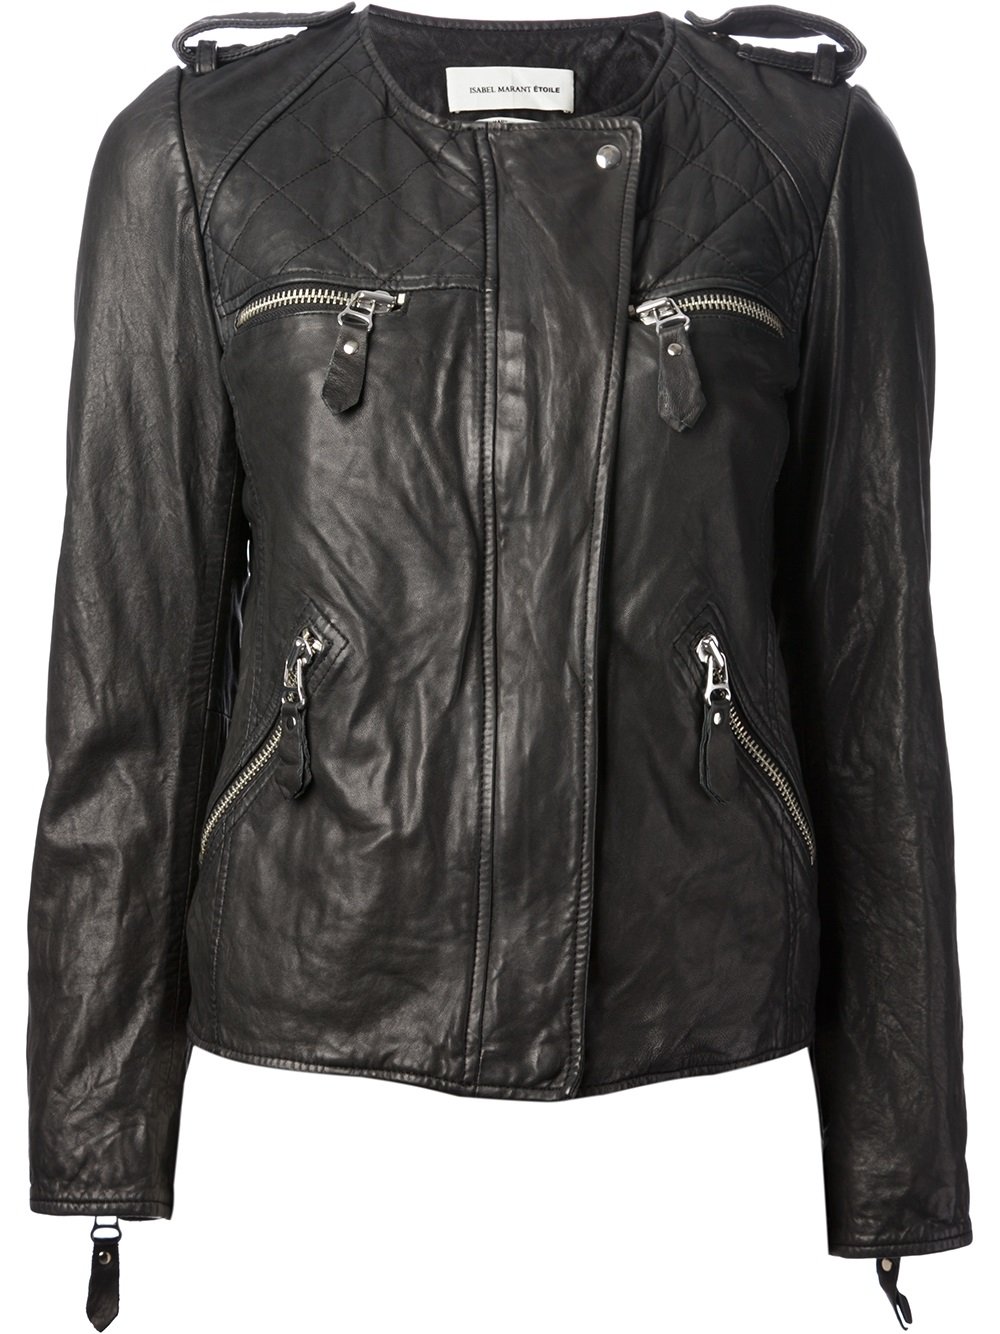 Lyst - Étoile Isabel Marant Kady Biker Jacket in Black